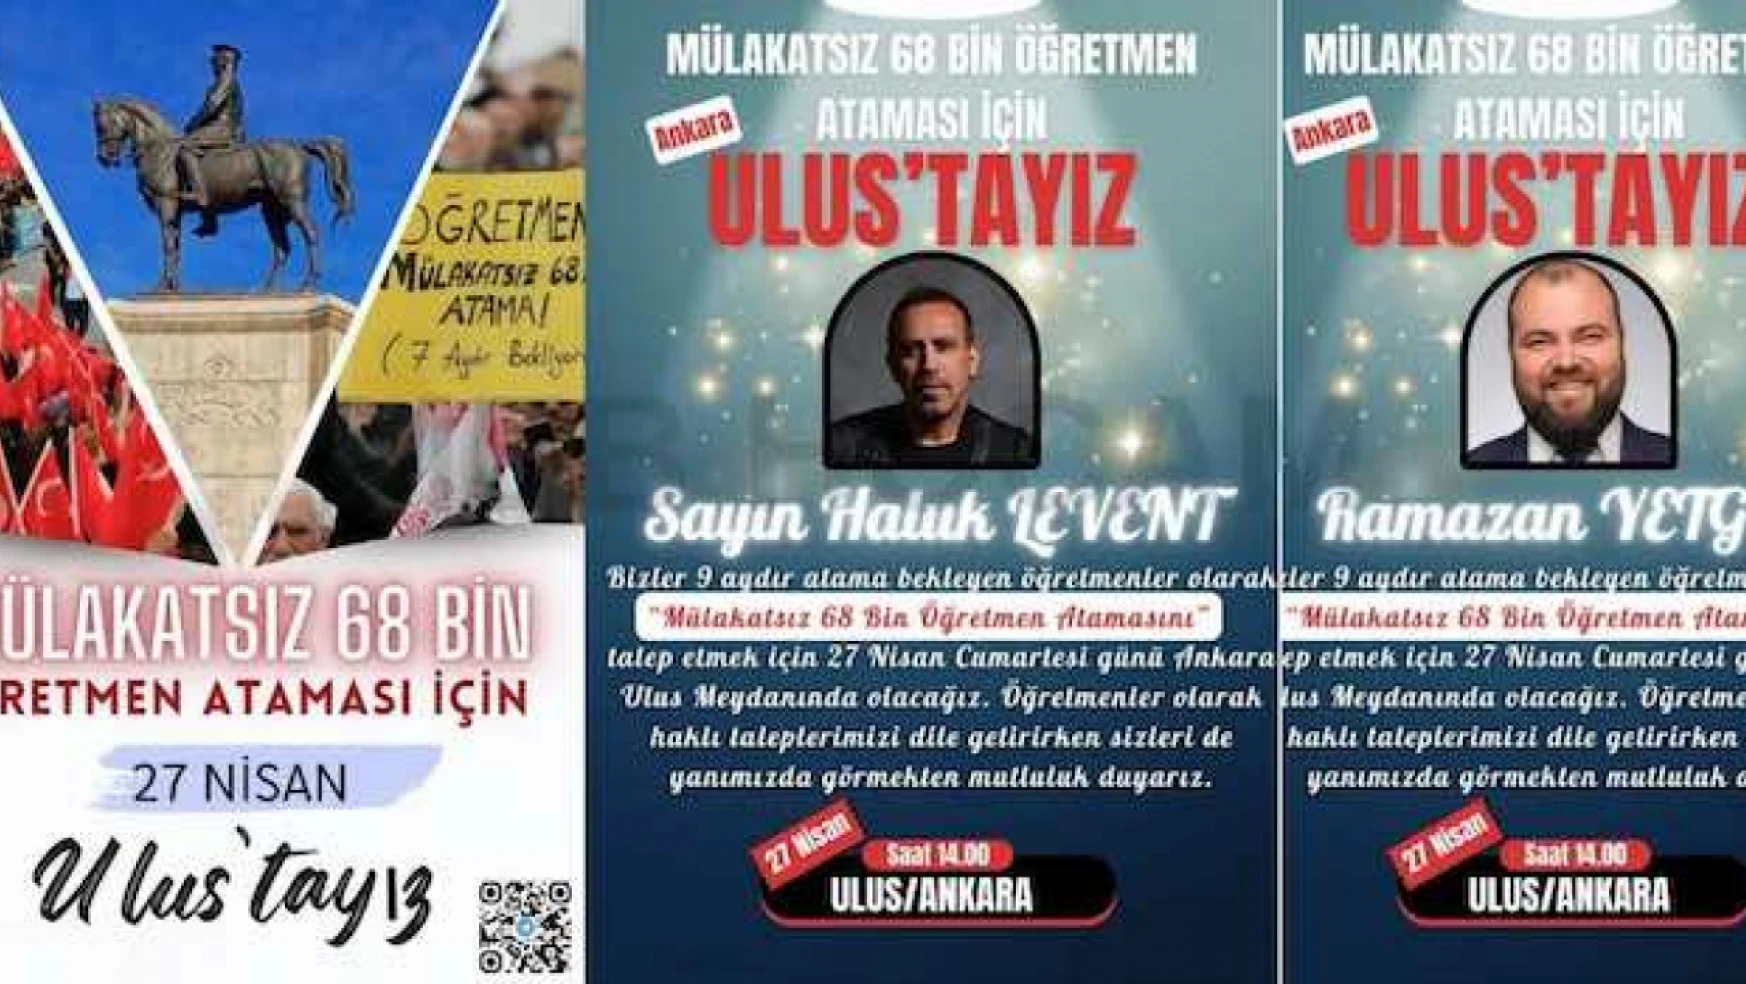 Mülakatsız 68 bin öğretmen ataması için bugün Ankara Ulus'ta büyük buluşma